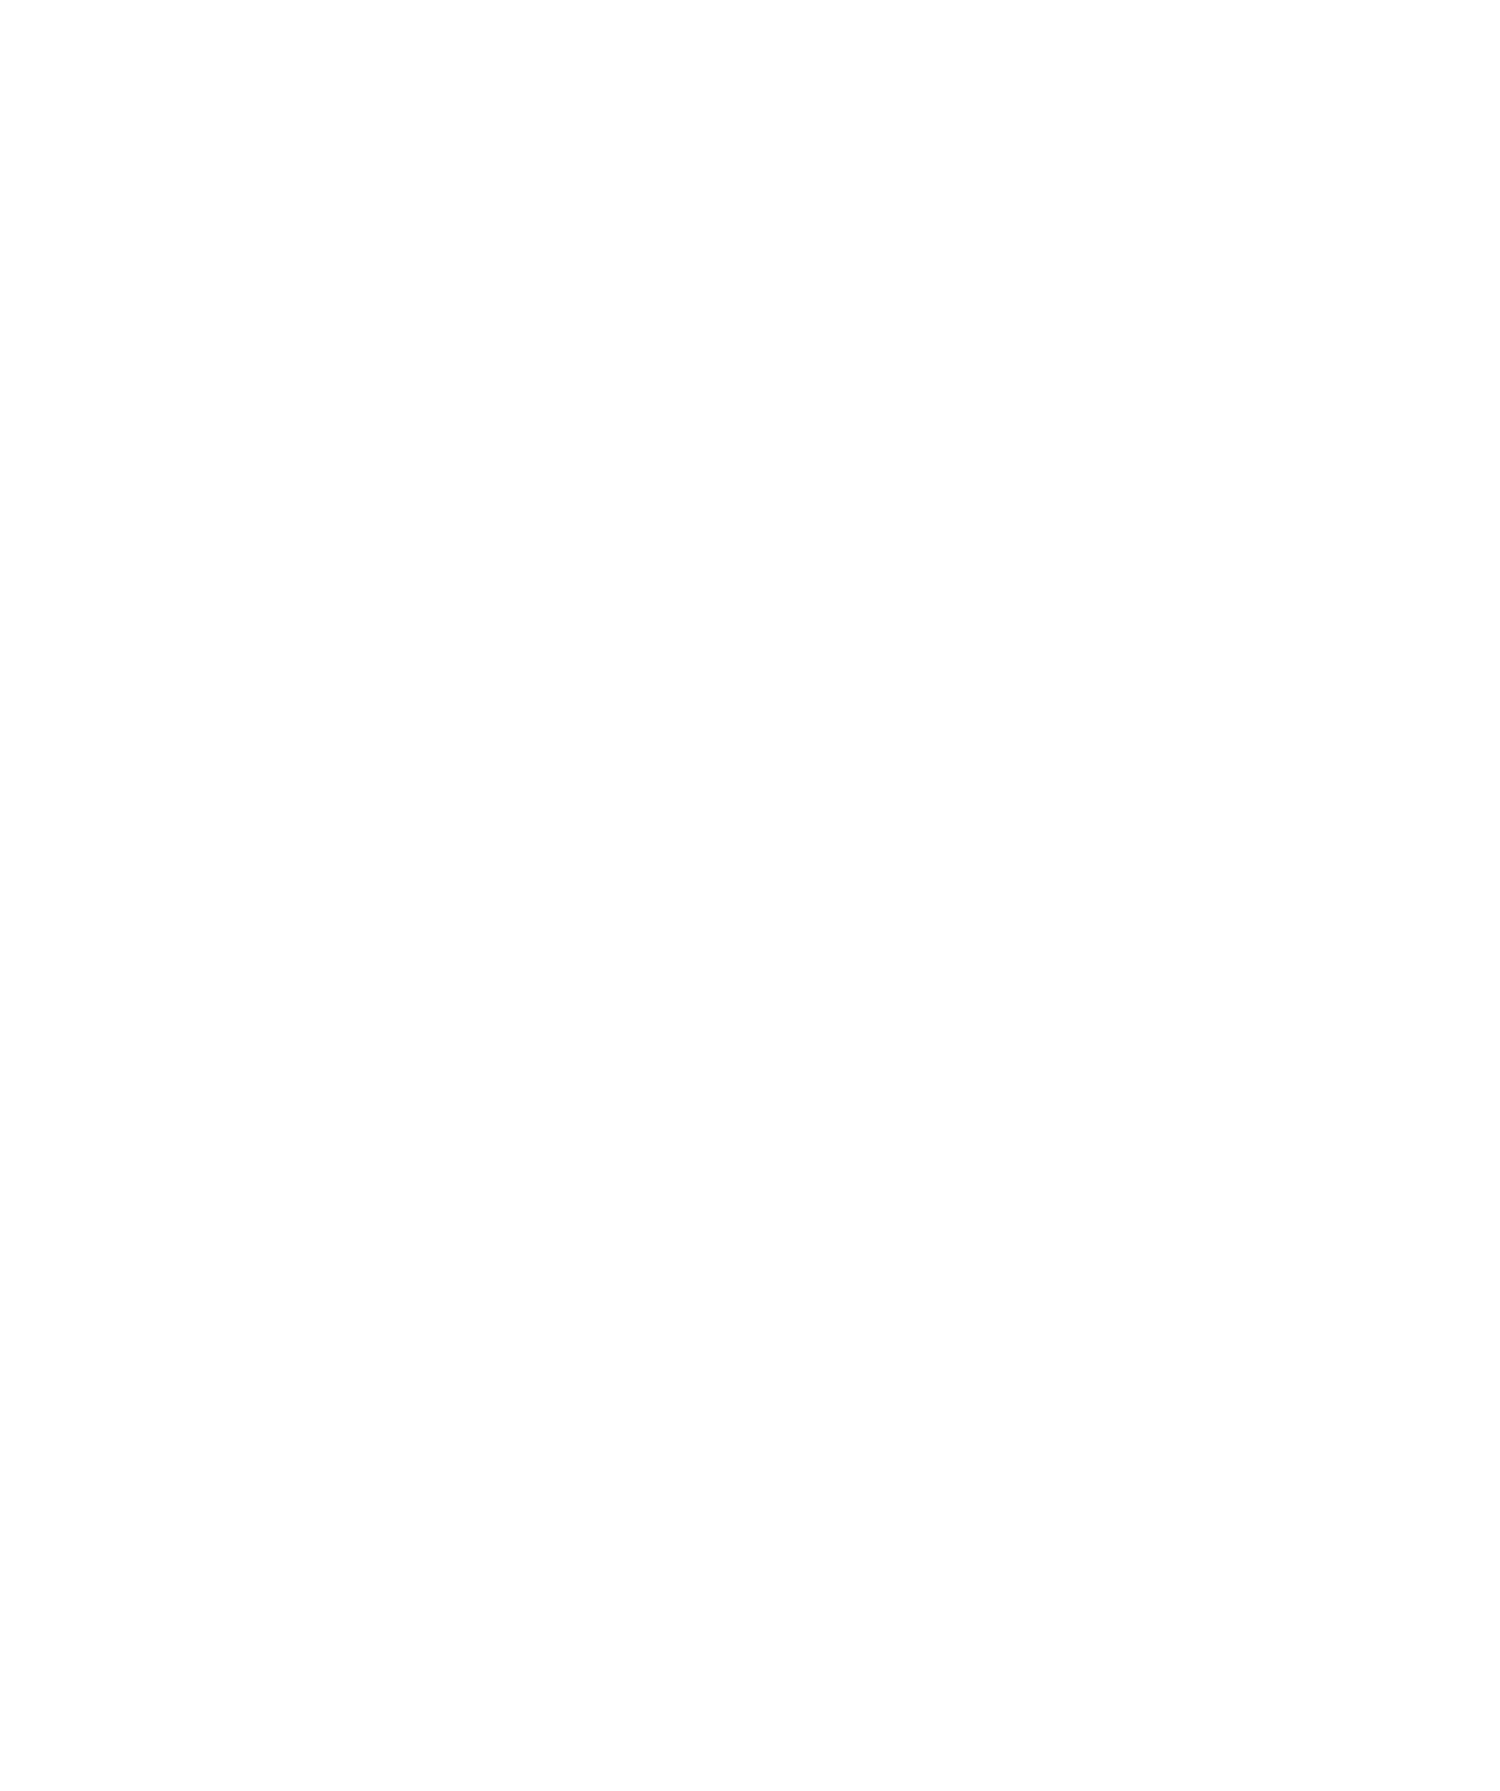 Alberta Ale Works